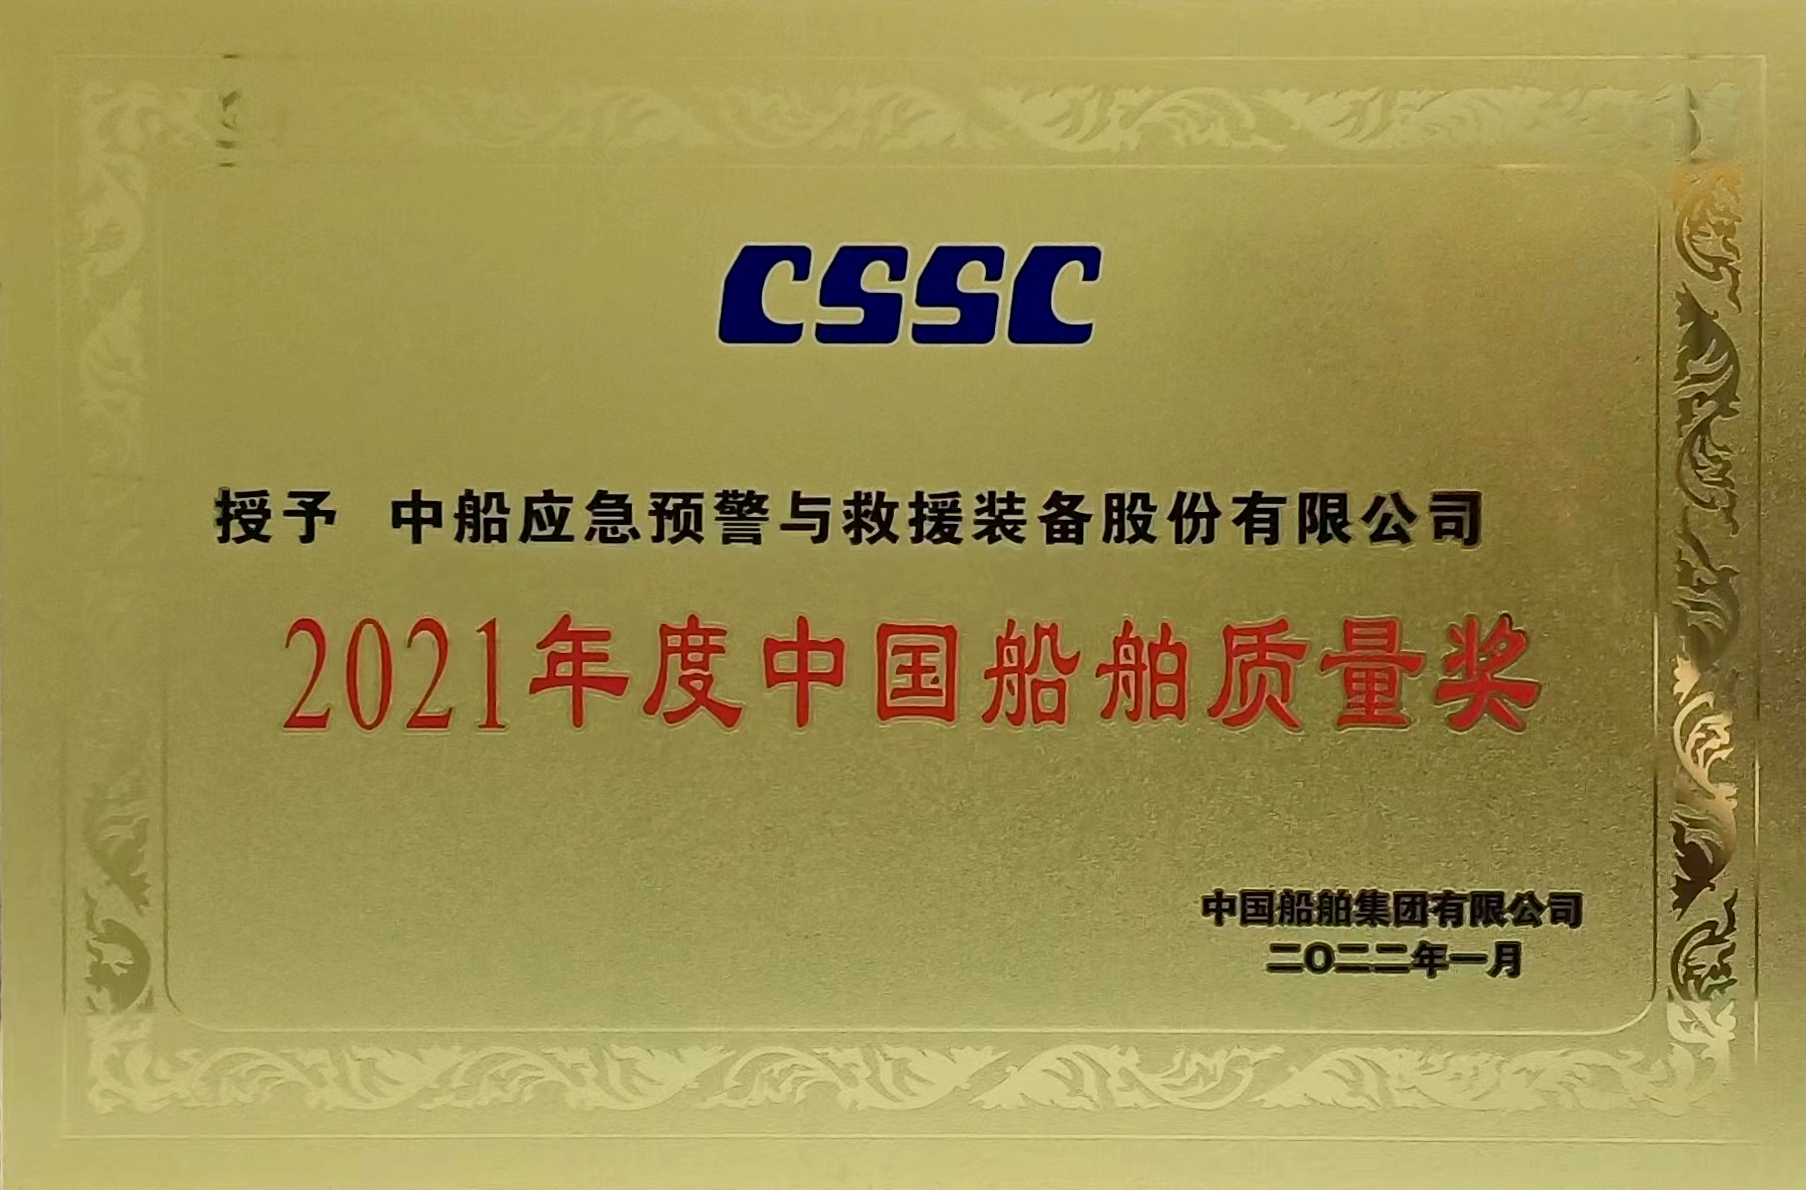 2021年中國船舶質量獎